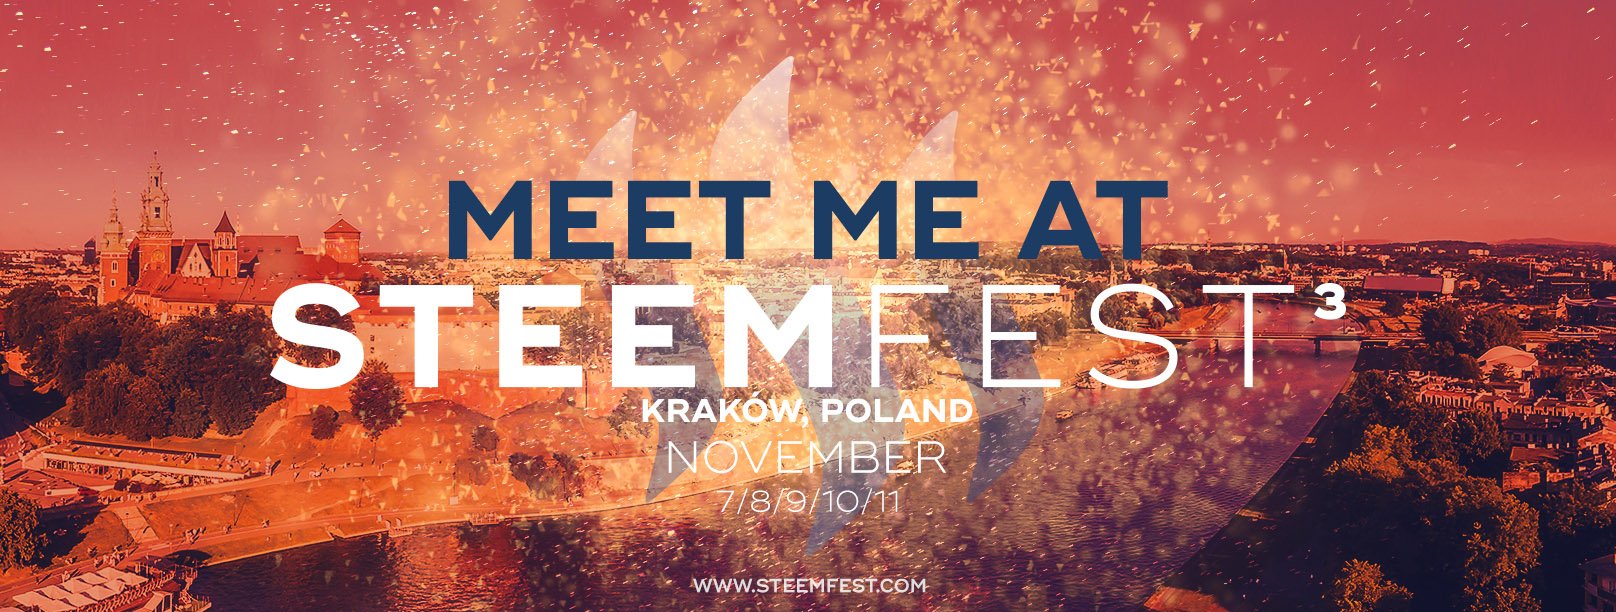 Meet me at SteemFest 2018 in Kraków